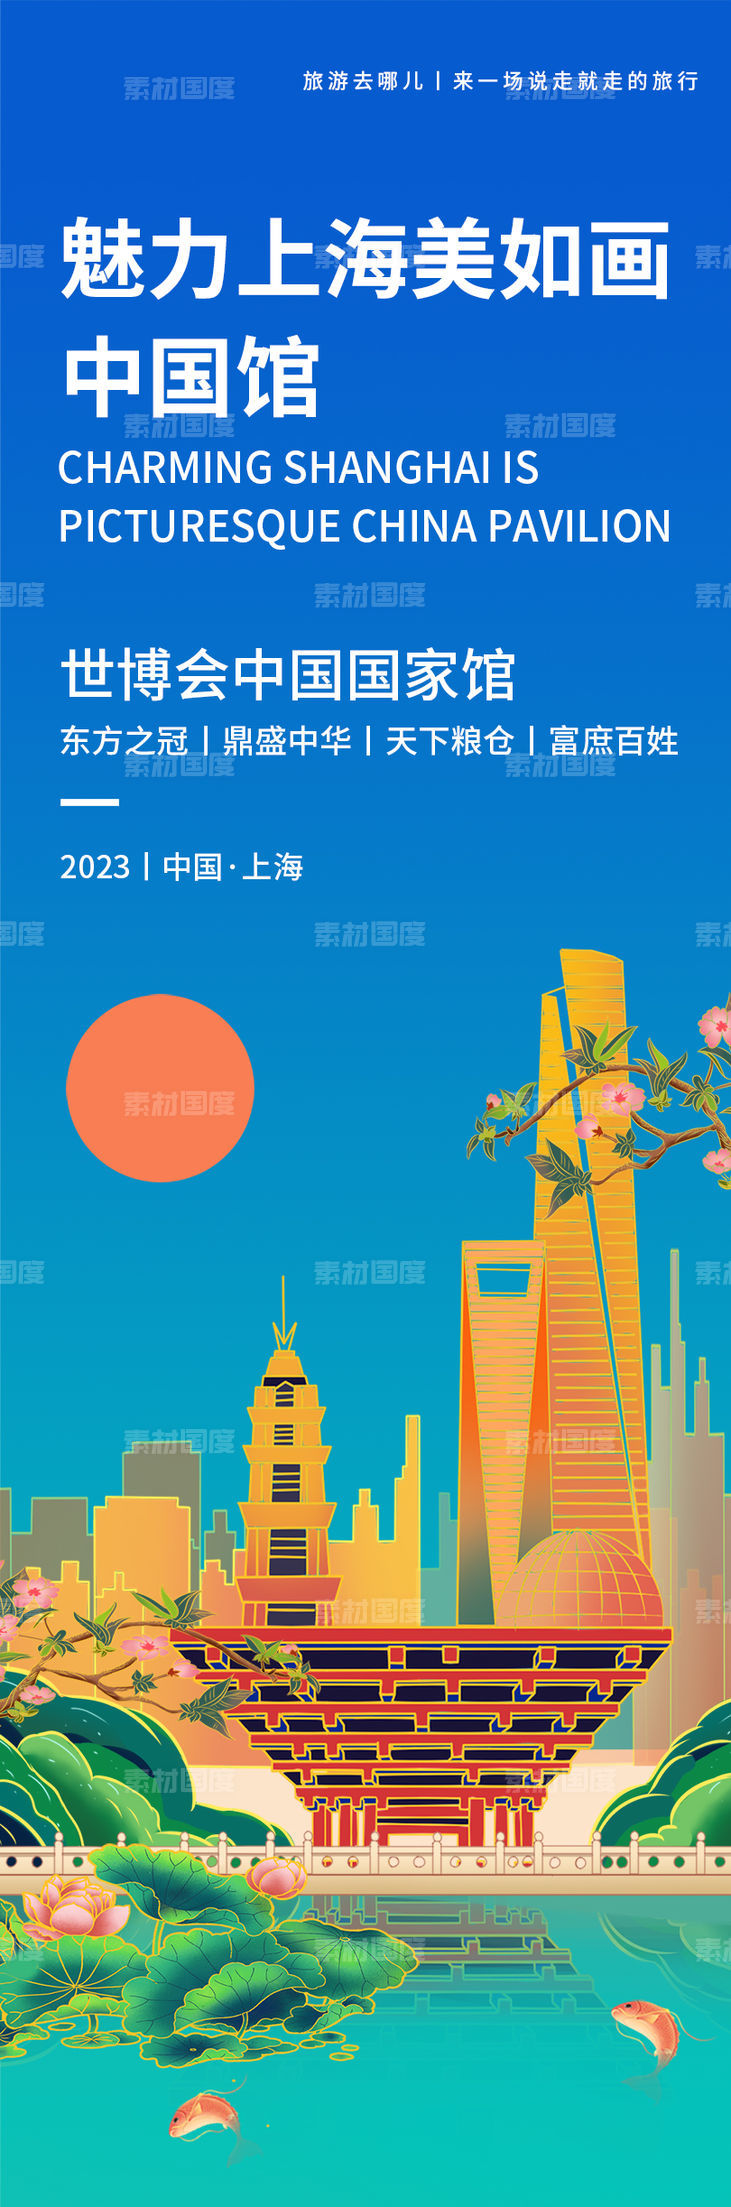 魅力上海世博会中国馆旅游海报